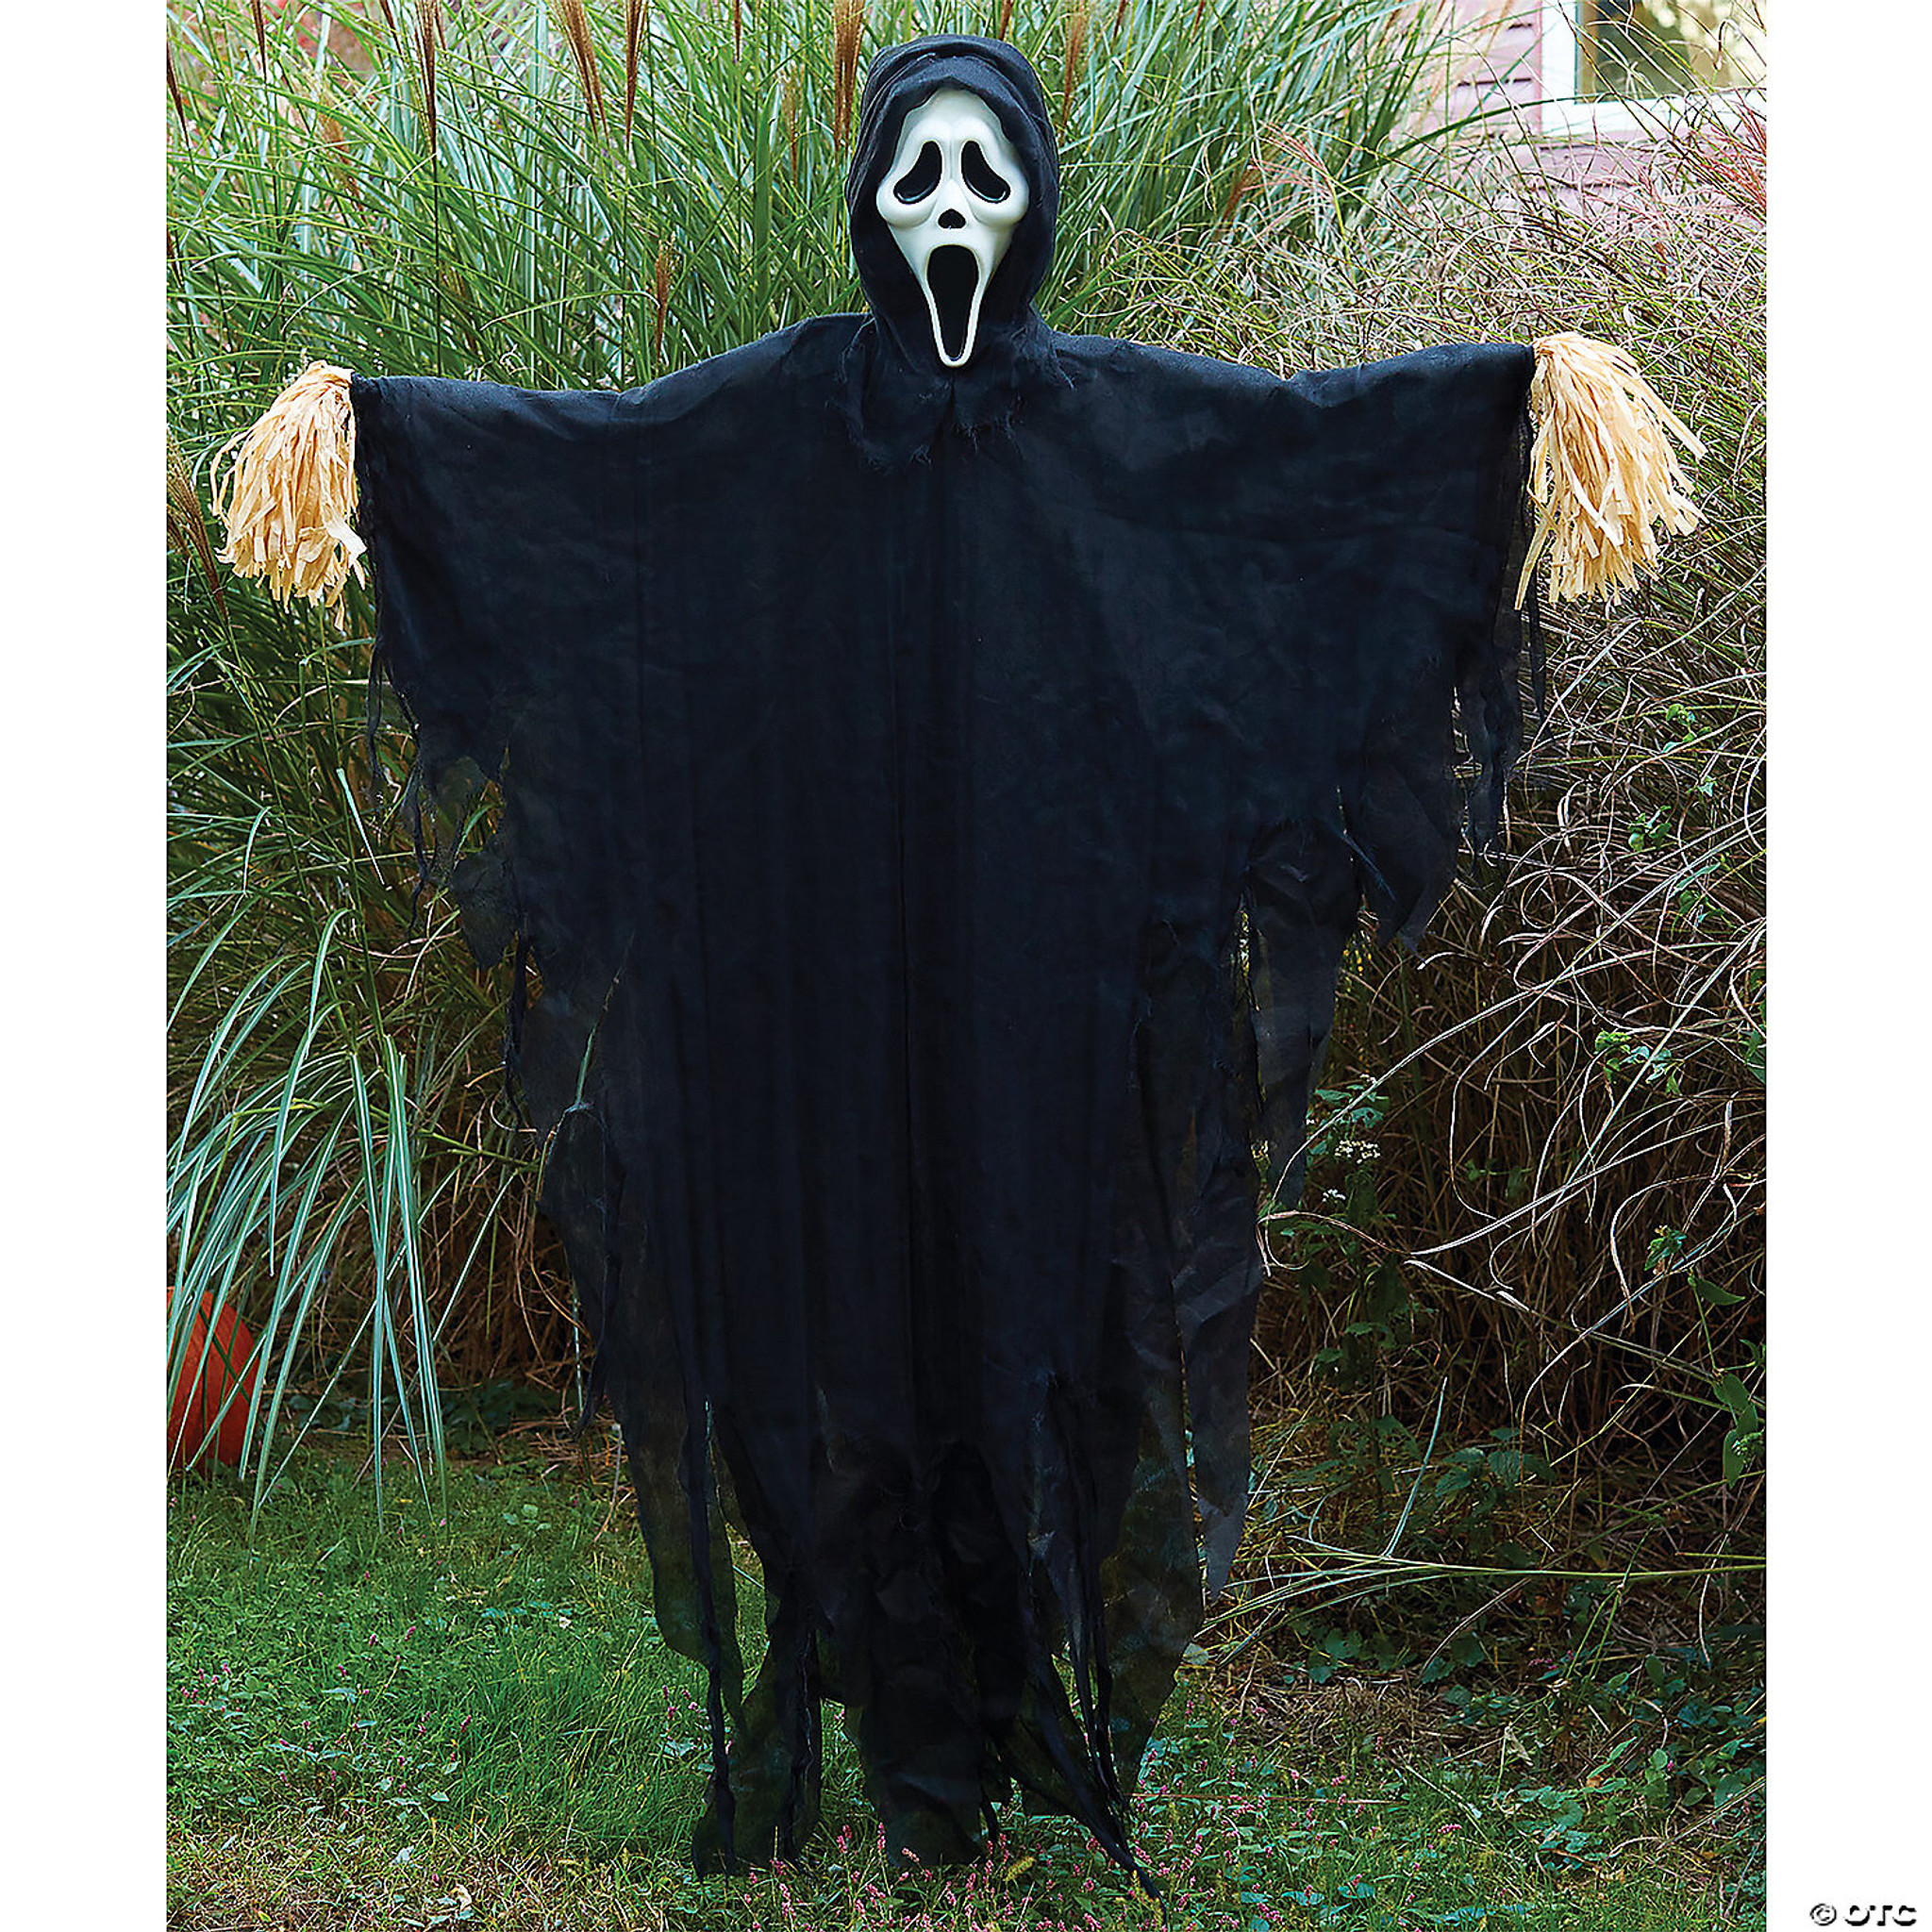 5' Ghostface Prop Scarecrow - Halloween FX Props